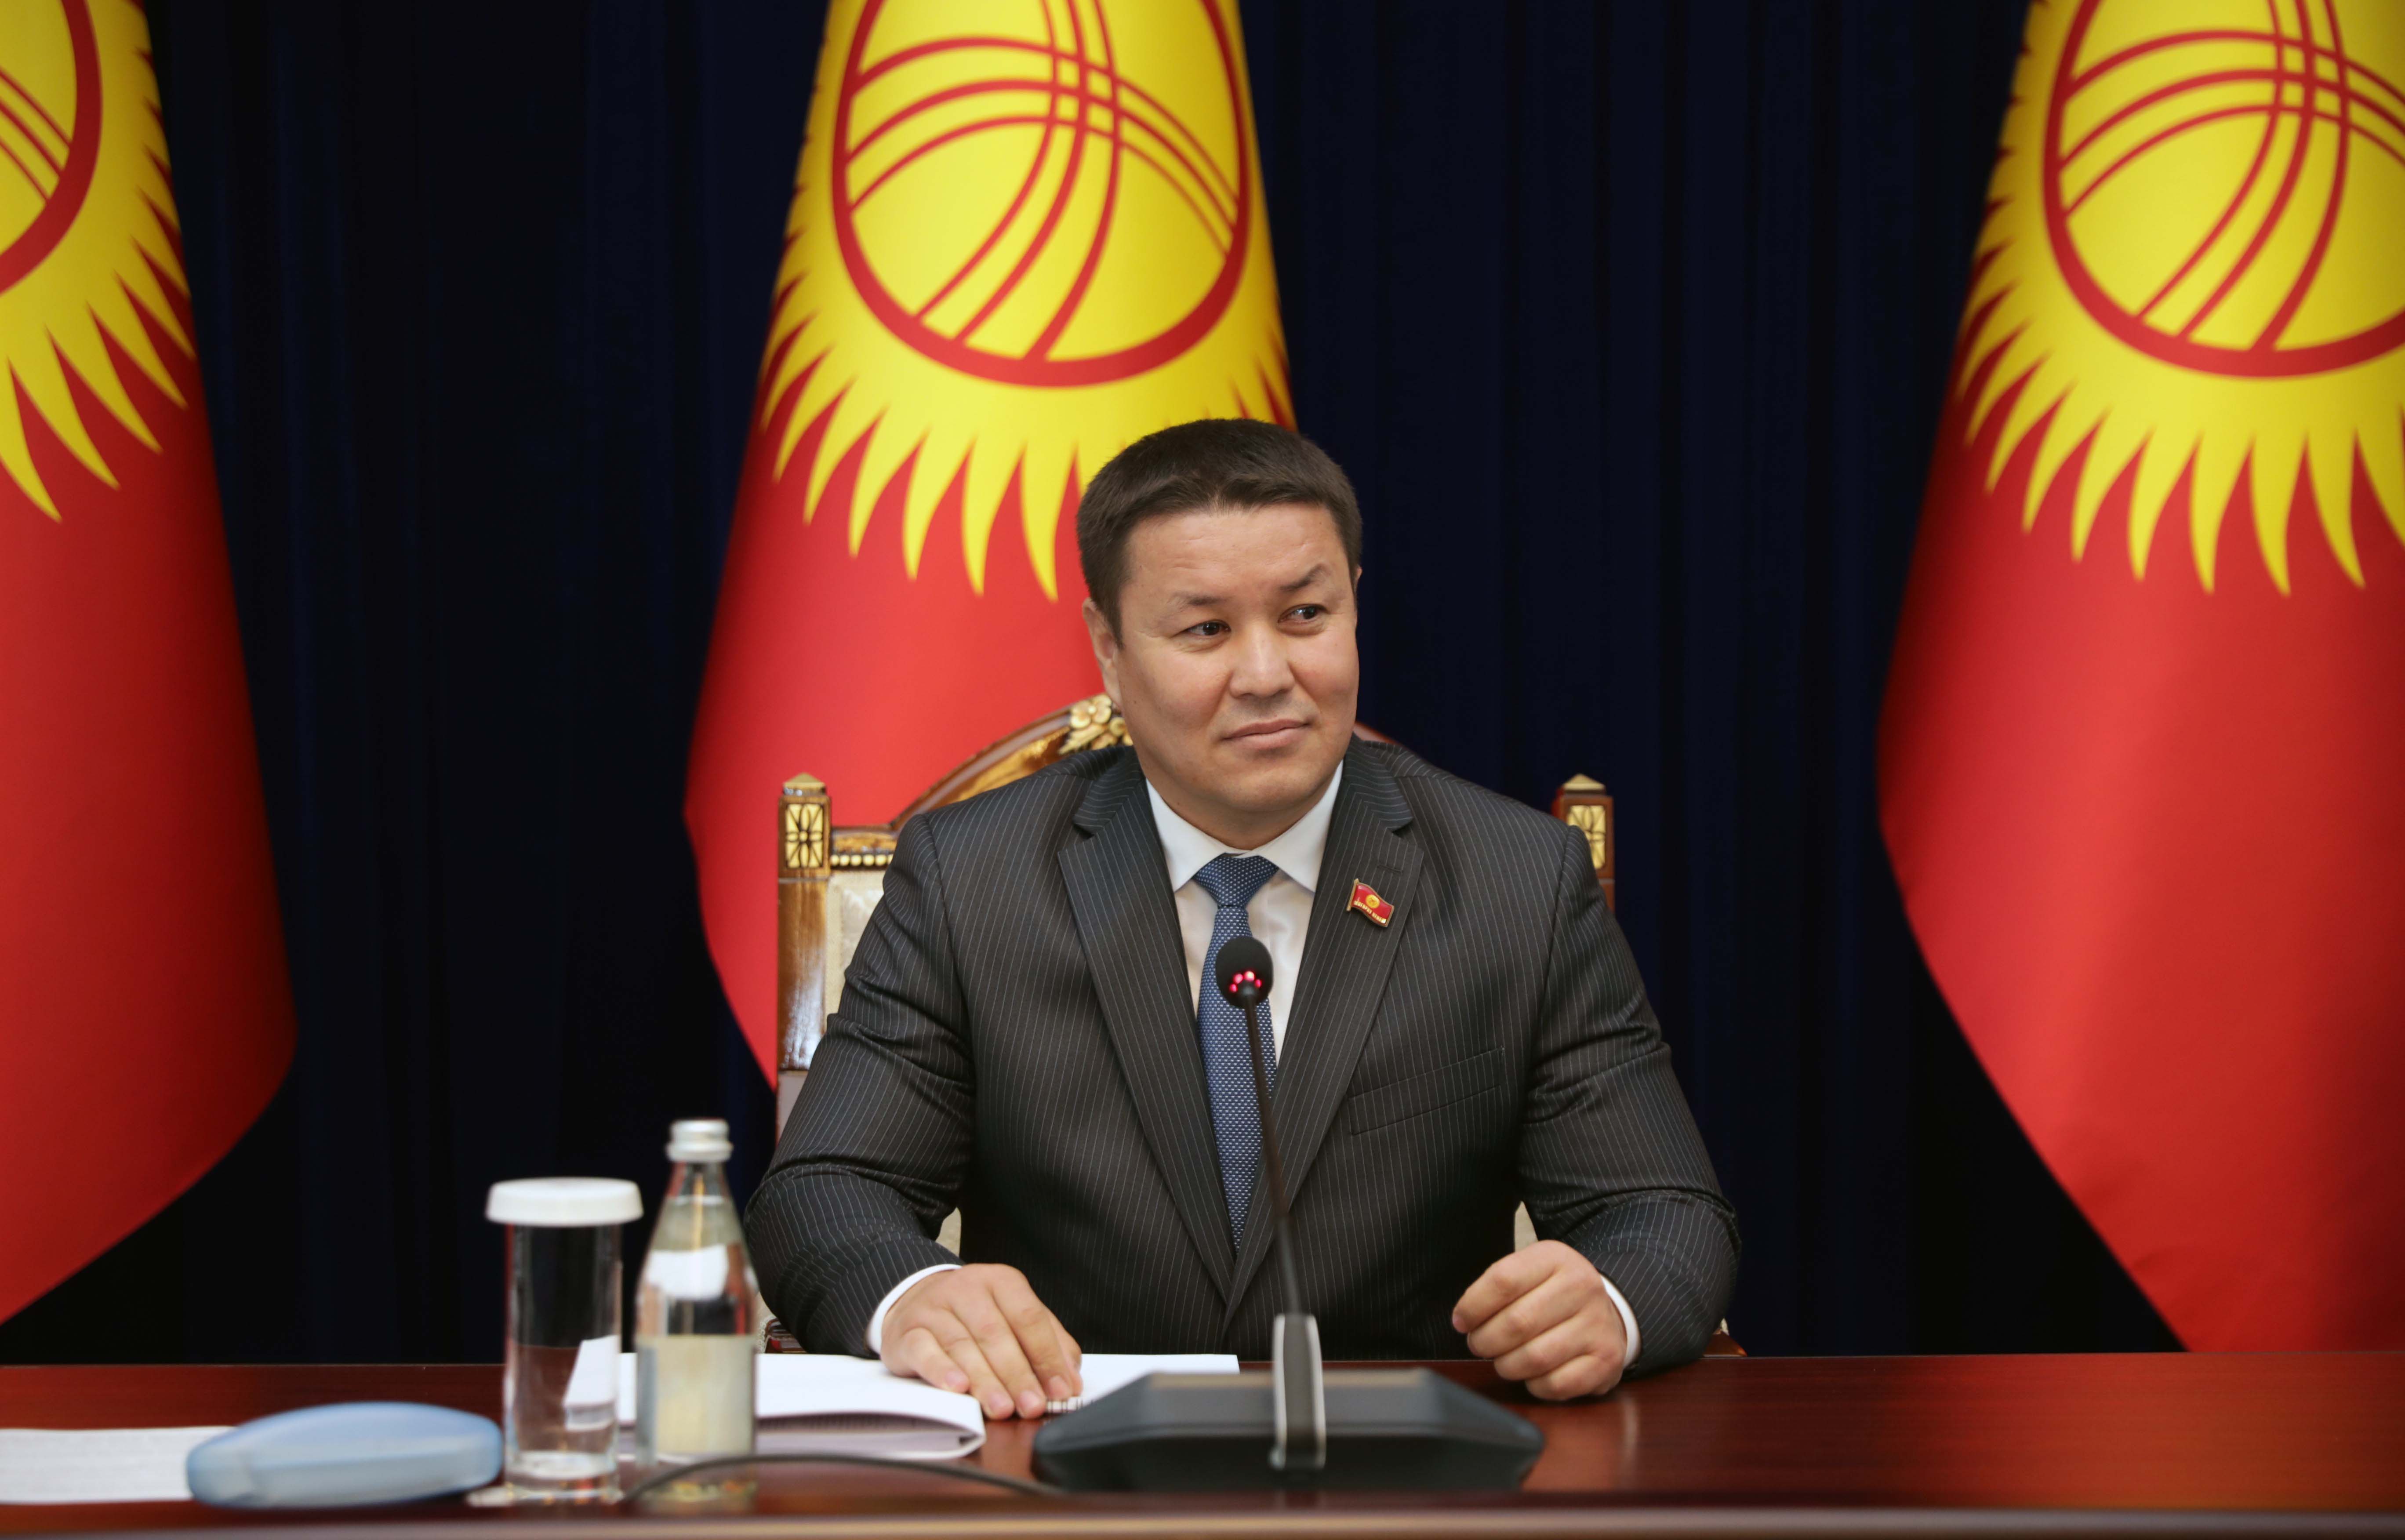 الأمين العام يهنئ رئيس مجلس قيرغيزيا